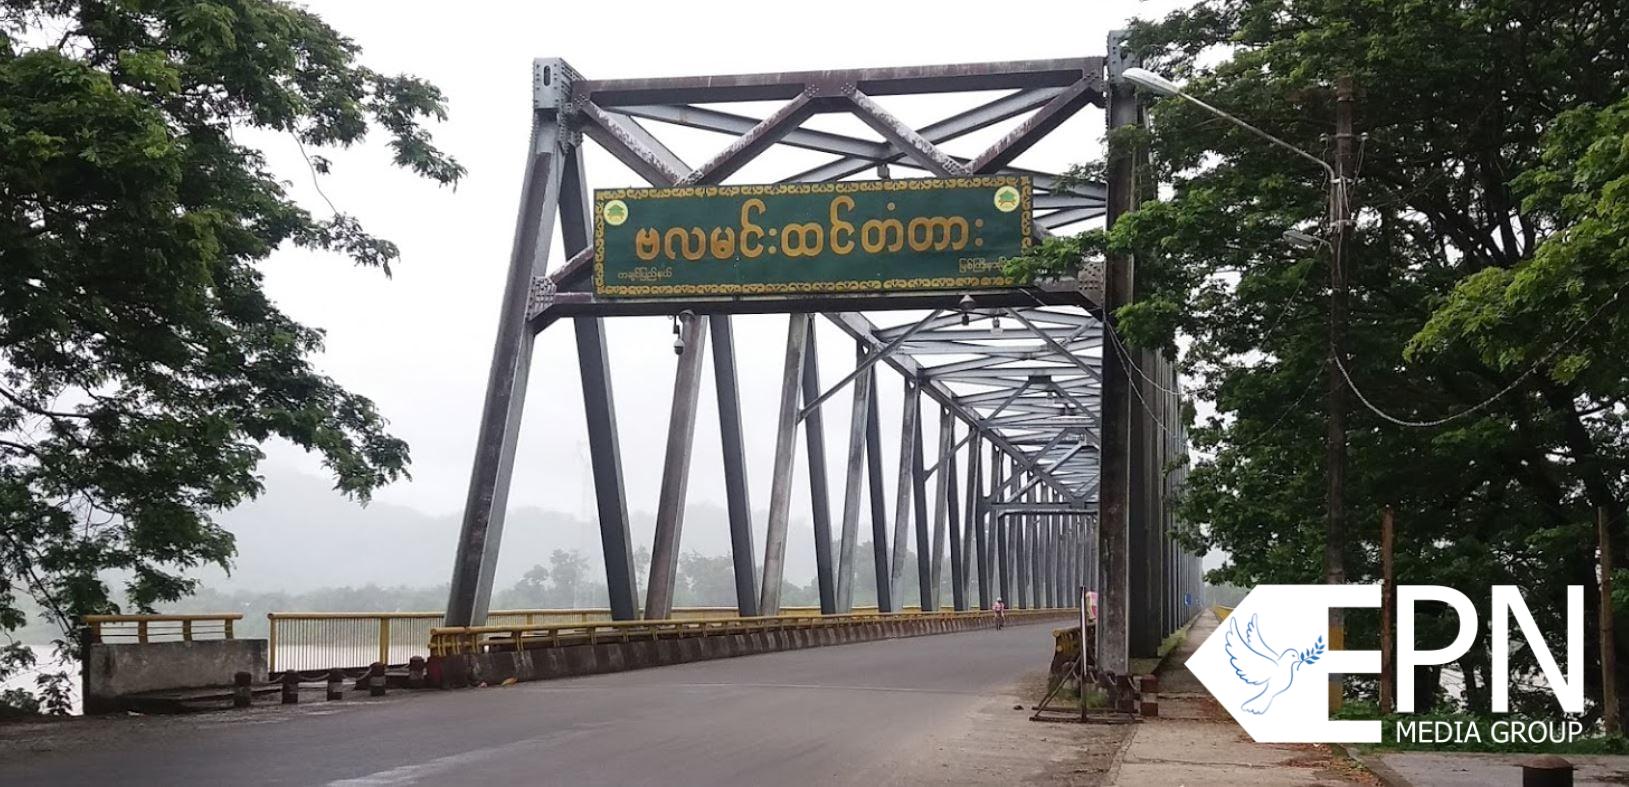 မြစ်ကြီးနားမြို့ ဗလမင်းထင် တံတားအနီးရှိ ကွန်ကရစ်ဓာတ်တိုင်တစ်တိုင် မိုင်းခွဲခံရ